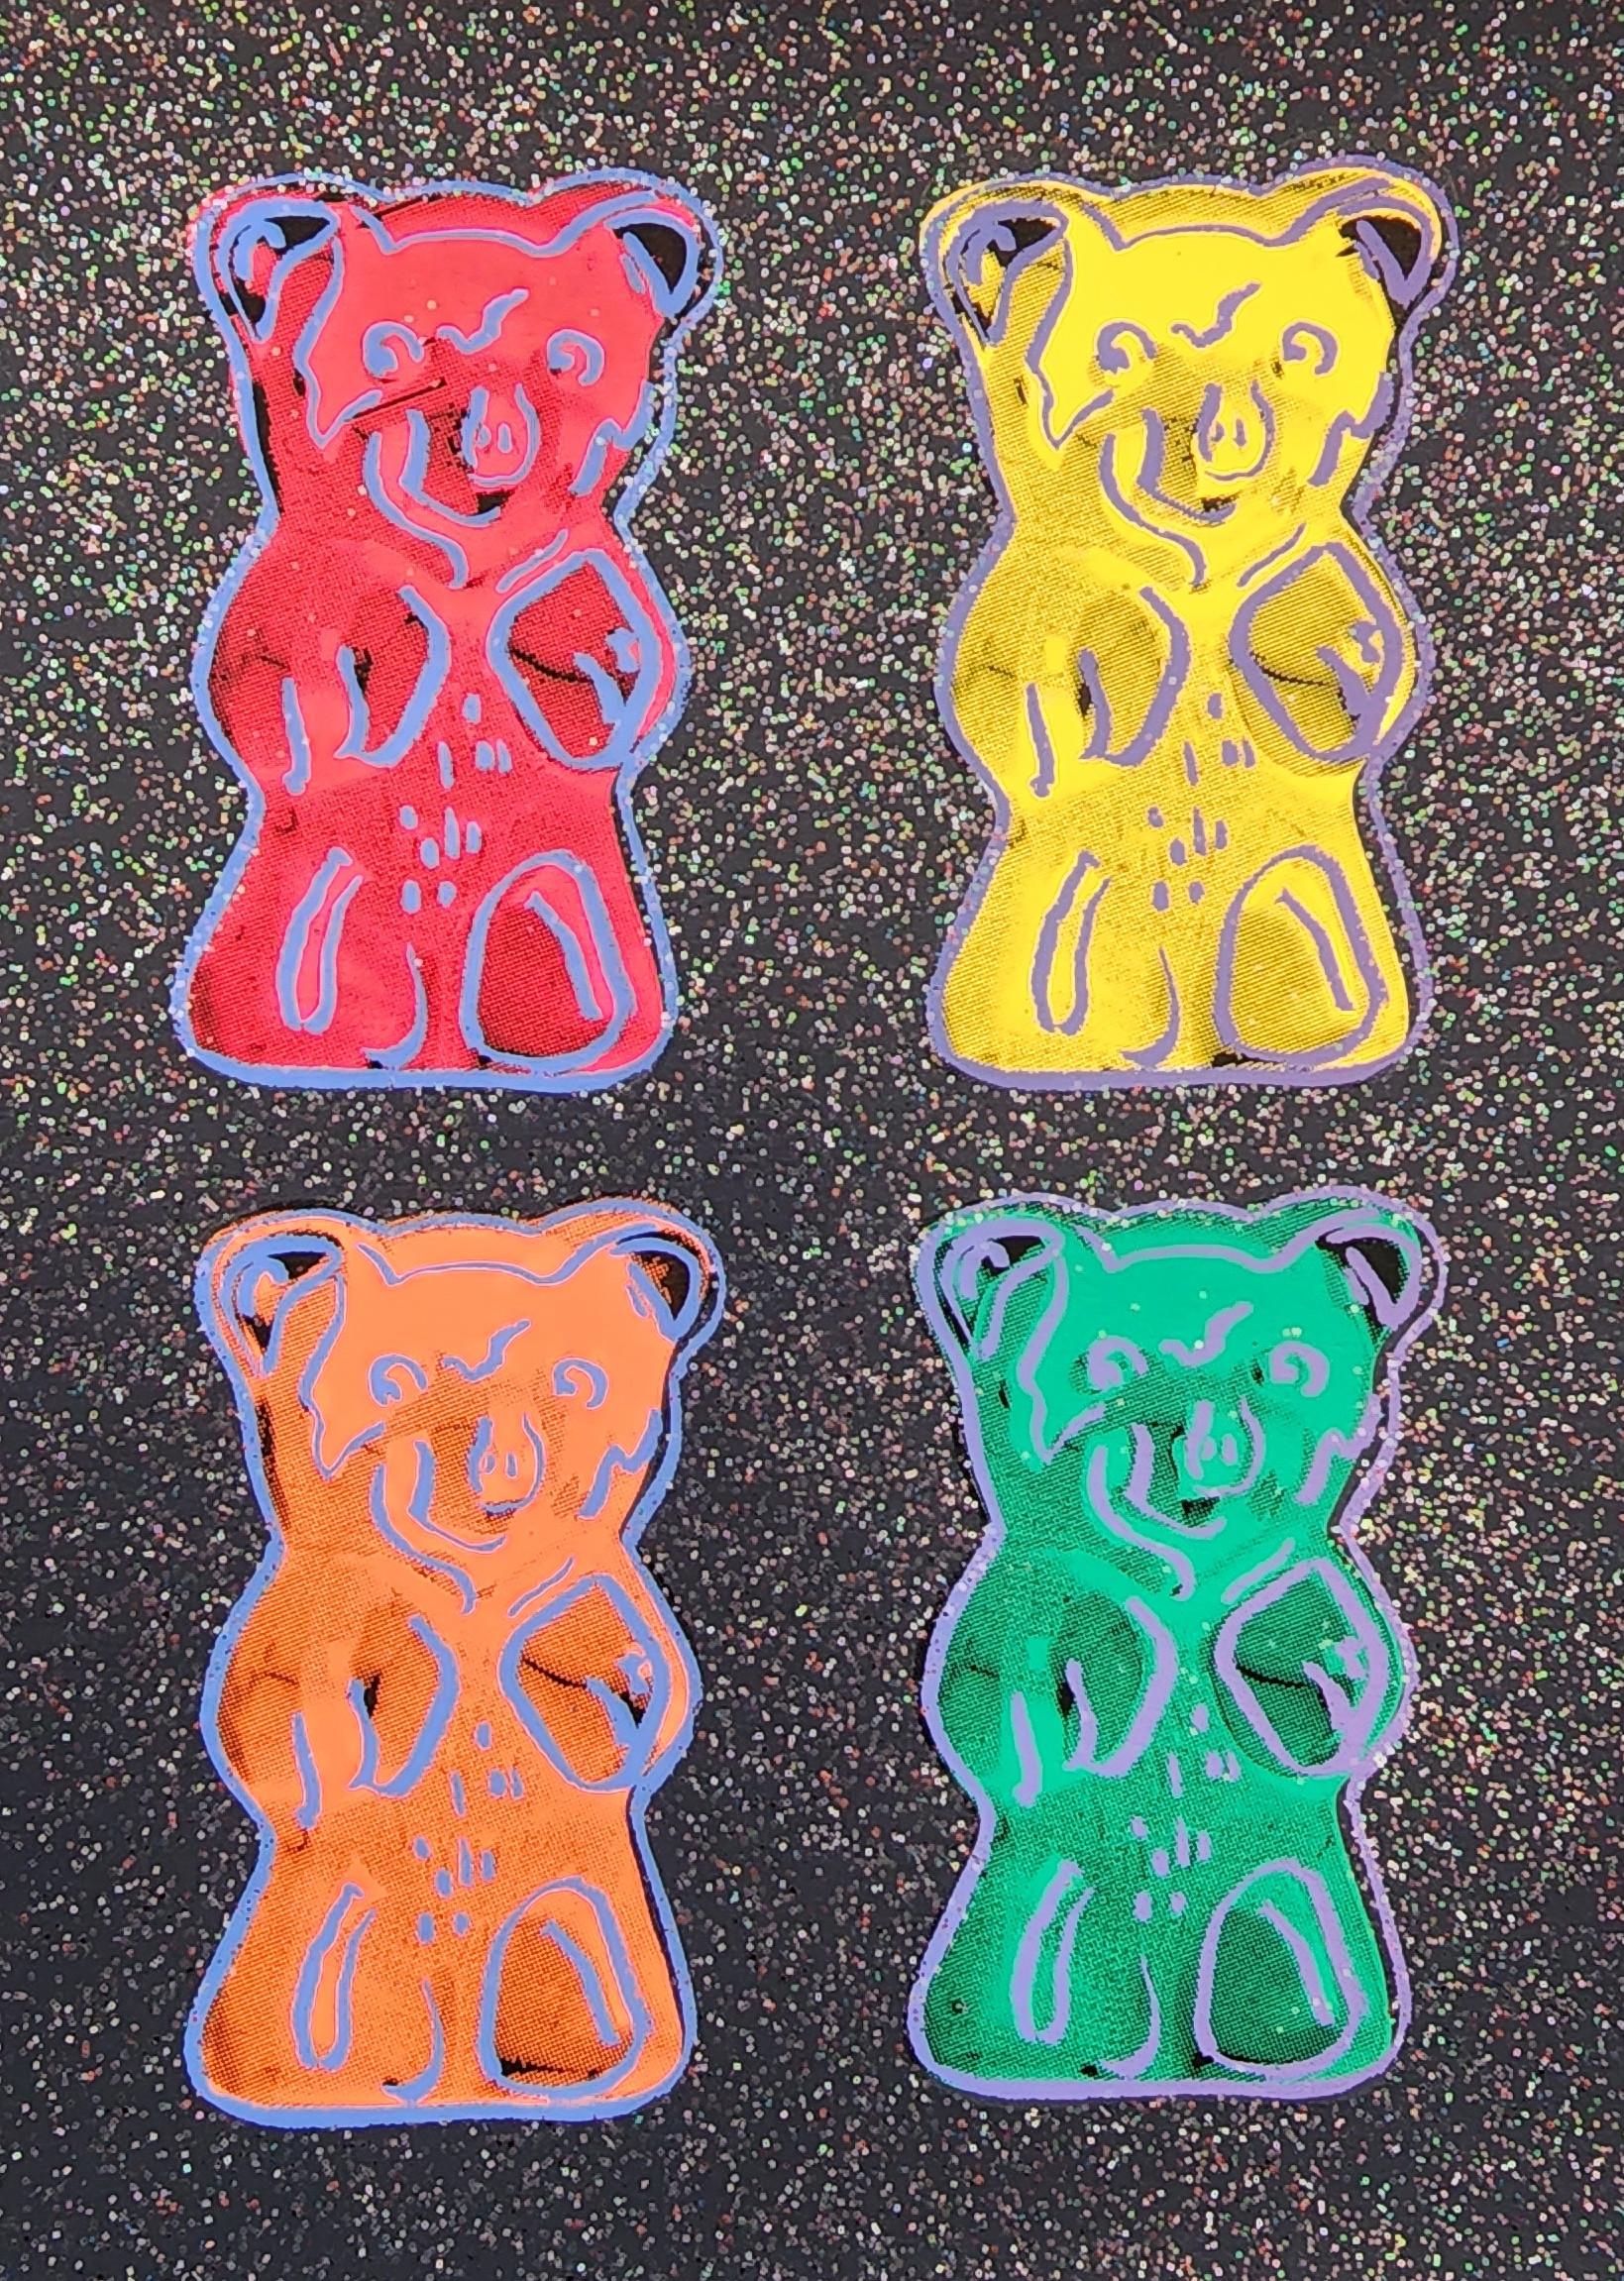 Jurgen Kuhl - Gummi Bears #2 with Glitter Small - BLACK (Pop Art, Andy  Warhol) For Sale at 1stDibs